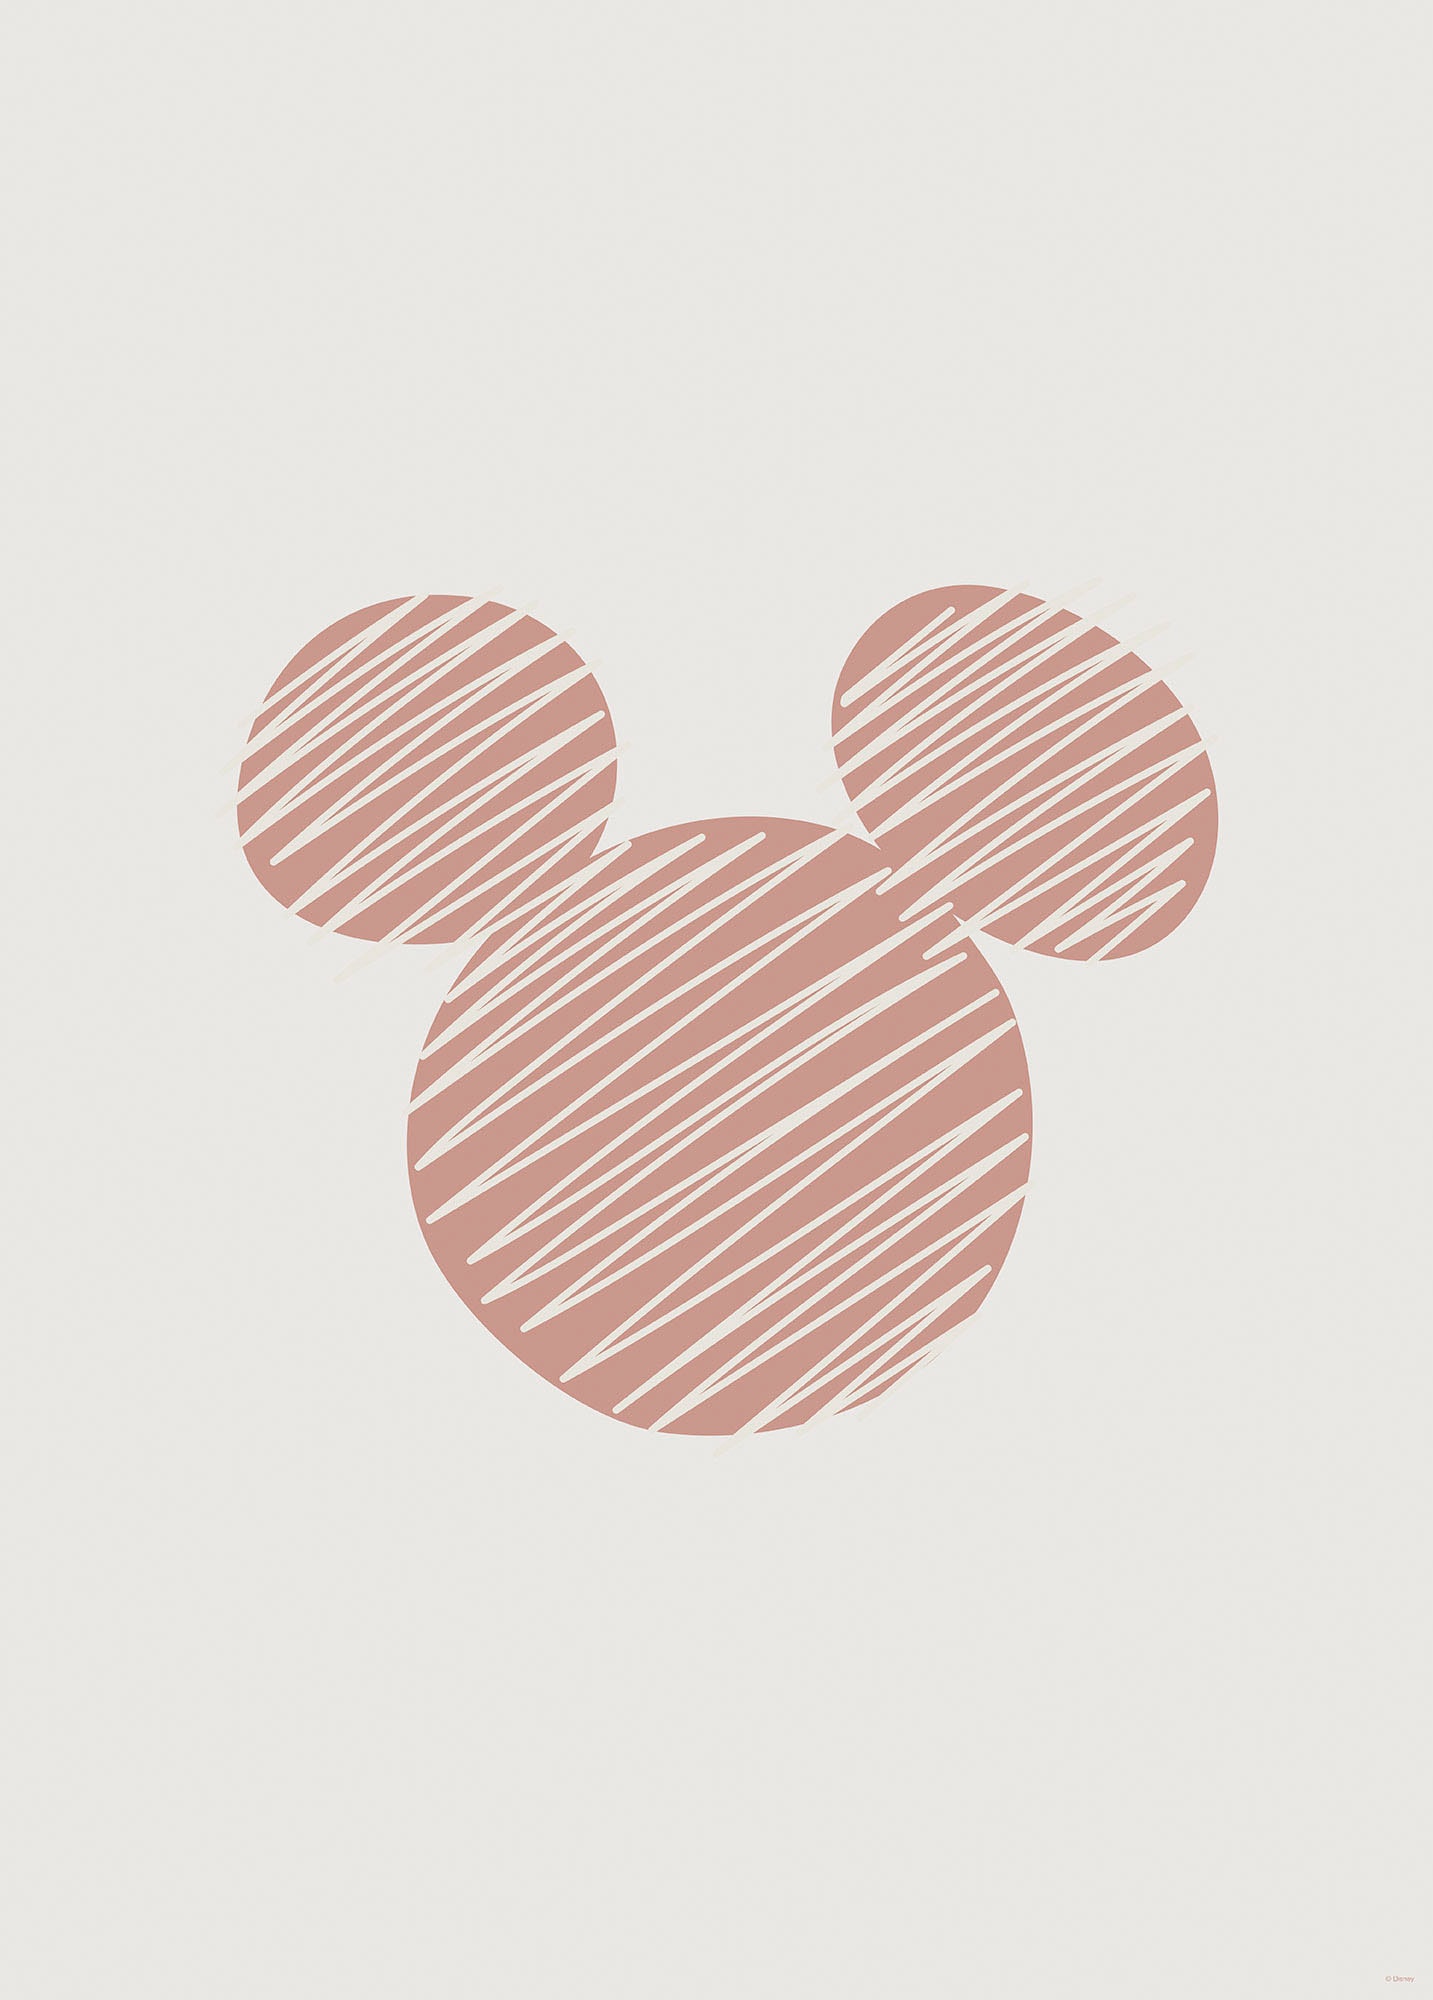 Komar Wandbild »Striped Mouse«, (1 St.), Deutsches Premium-Poster Fotopapier mit seidenmatter Oberfläche und hoher Lichtbeständigkeit. Für fotorealistische Drucke mit gestochen scharfen Details und hervorragender Farbbrillanz. von Komar